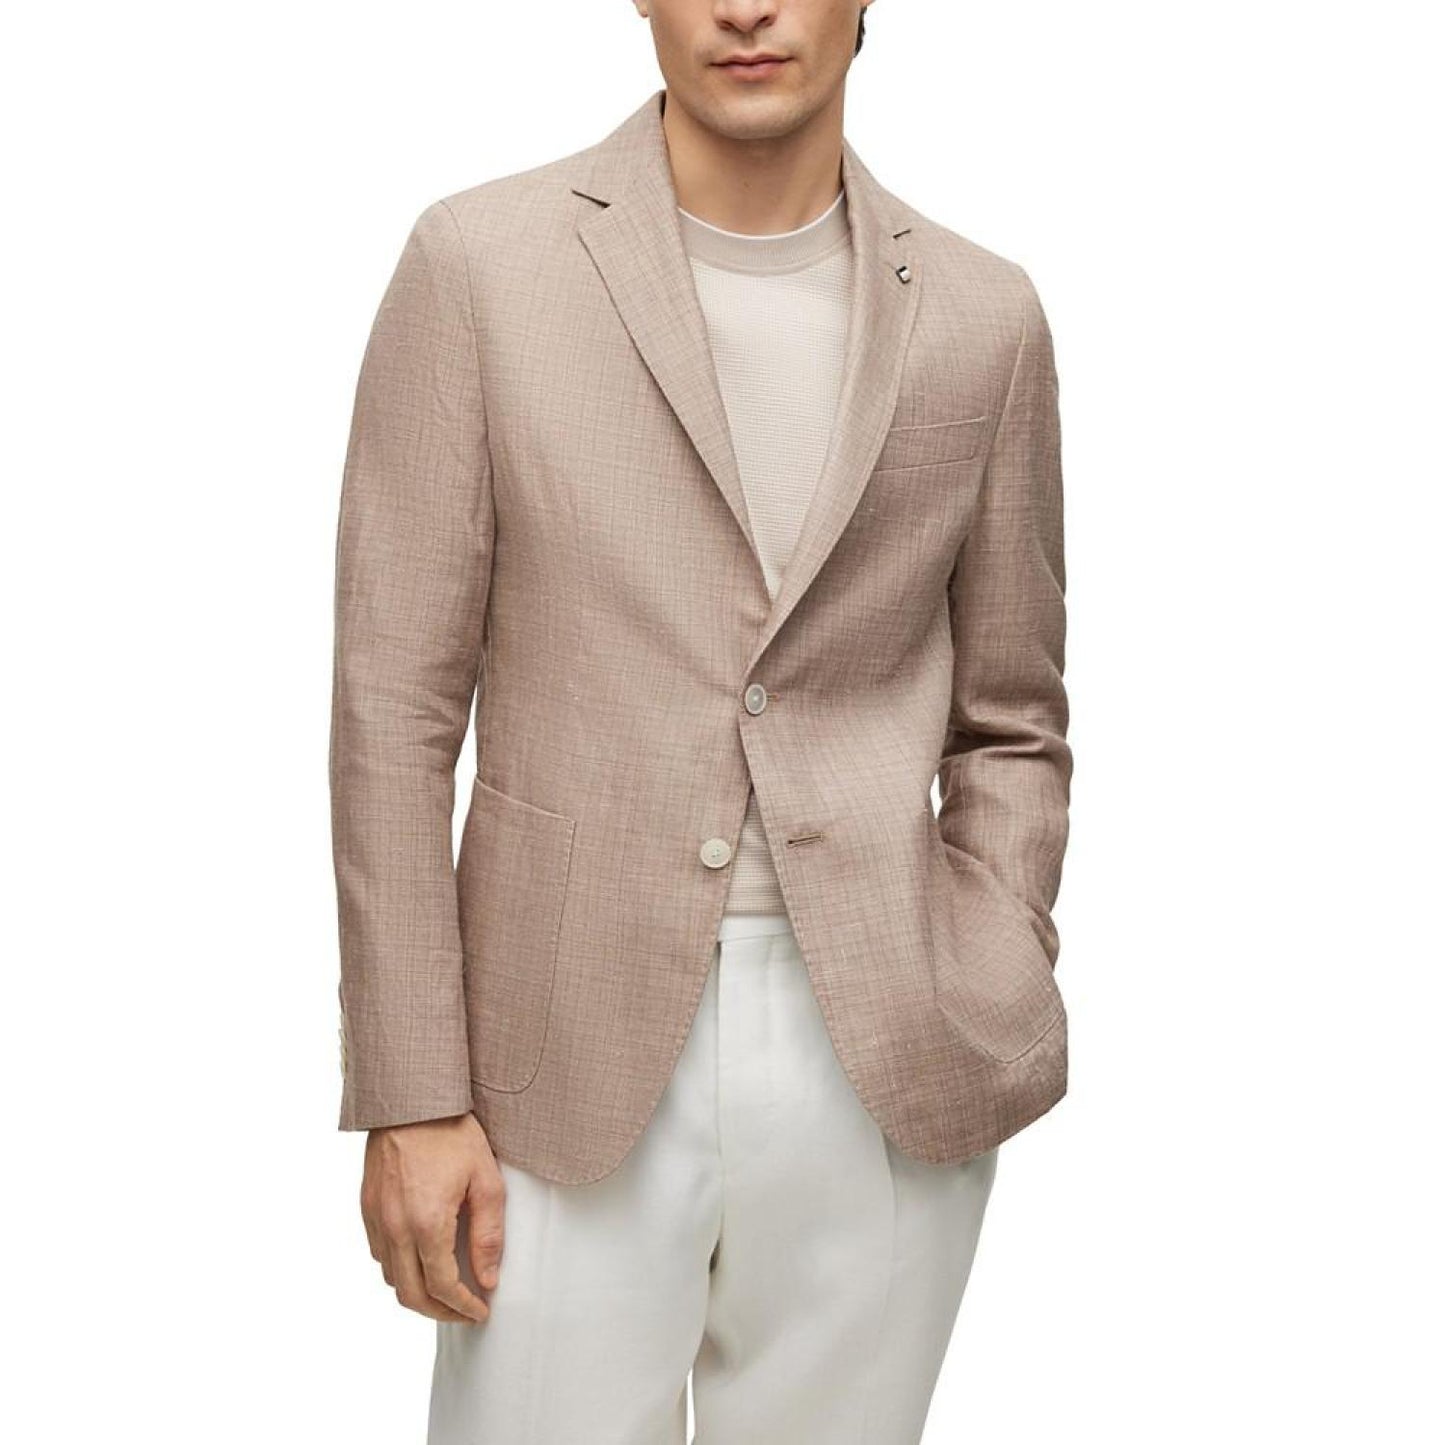 Men's Patterned Linen Slim-Fit Jacket